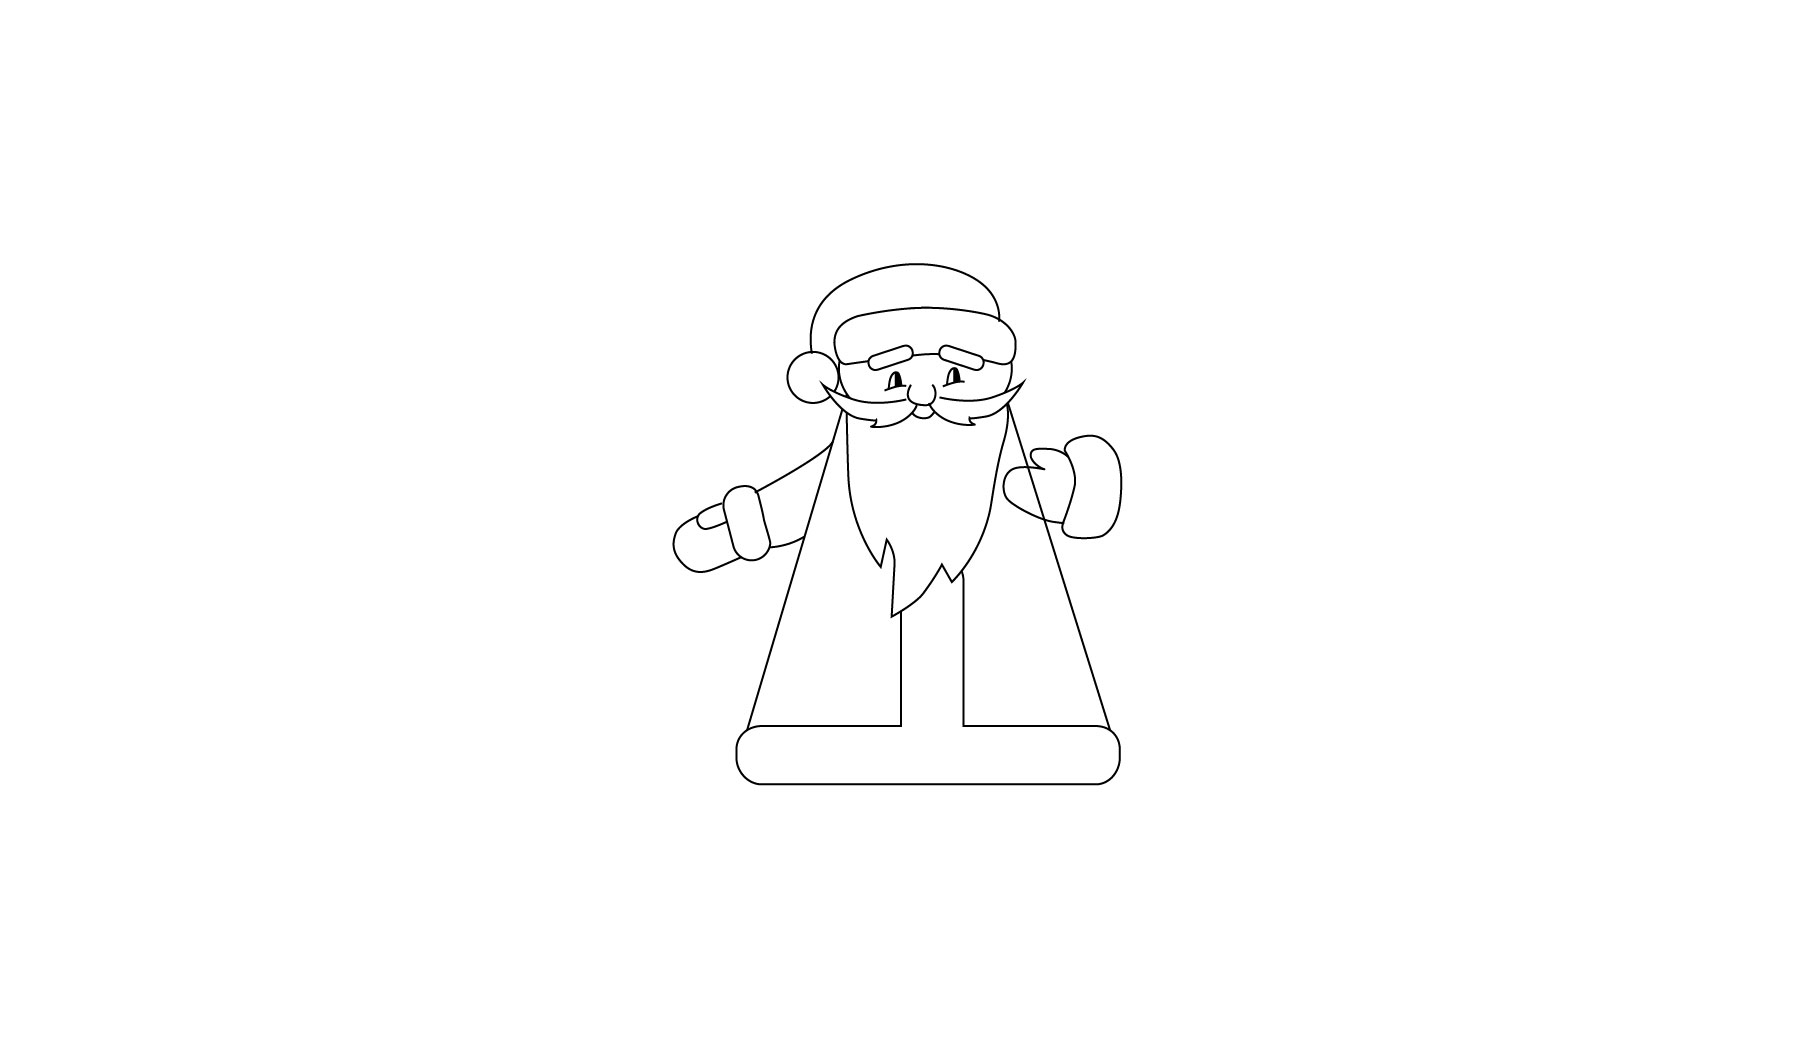 Нарисовать Деда Мороза легко